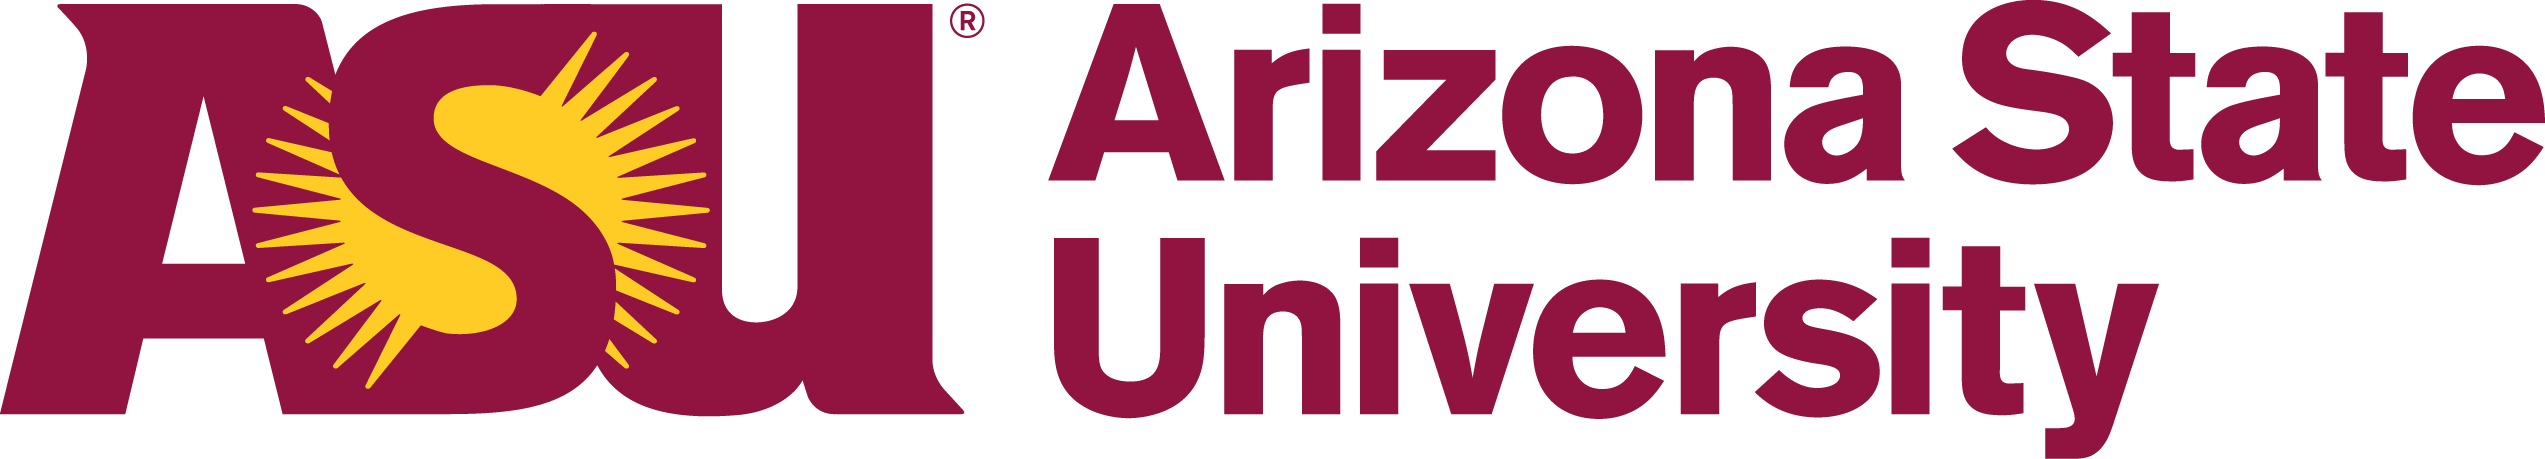 Arizona State University - Arizona State University Logo Vector (2545x459)